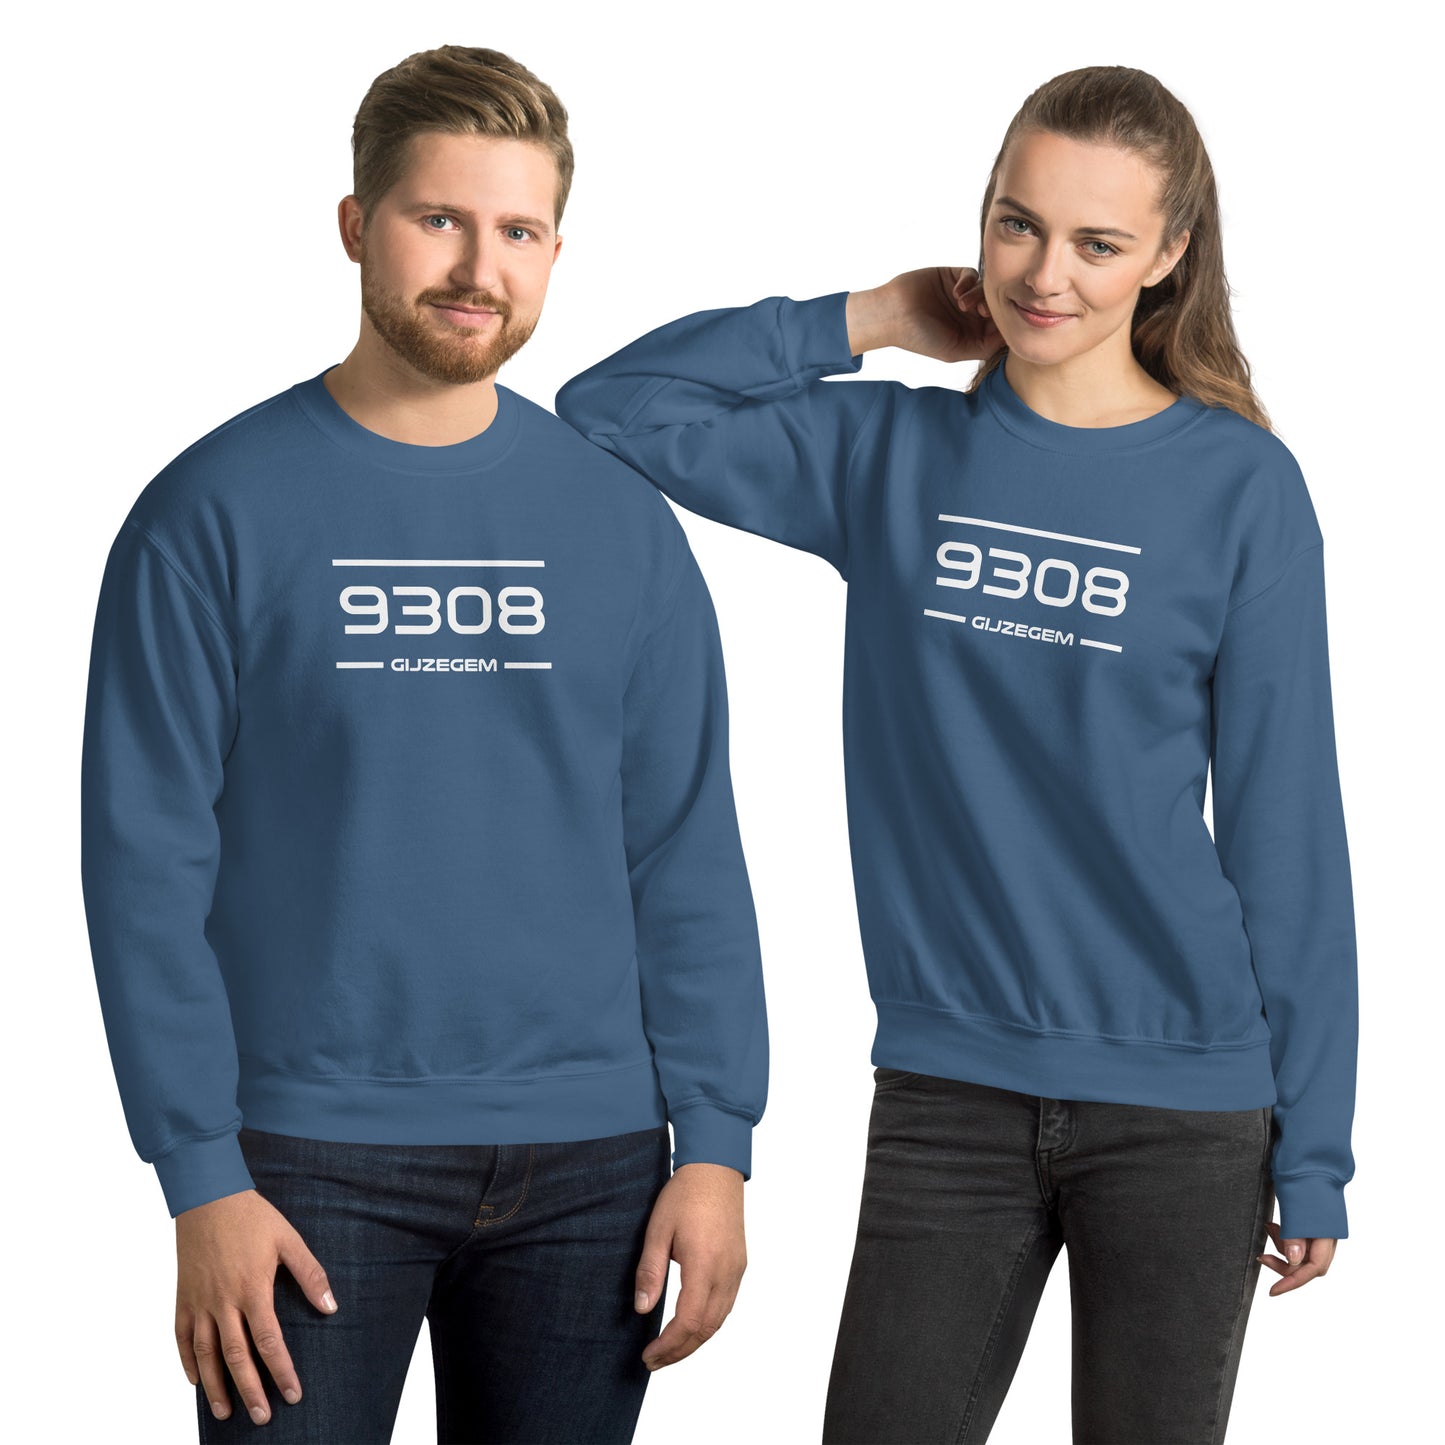 Sweater - 9308- Gijzegem (M/V)